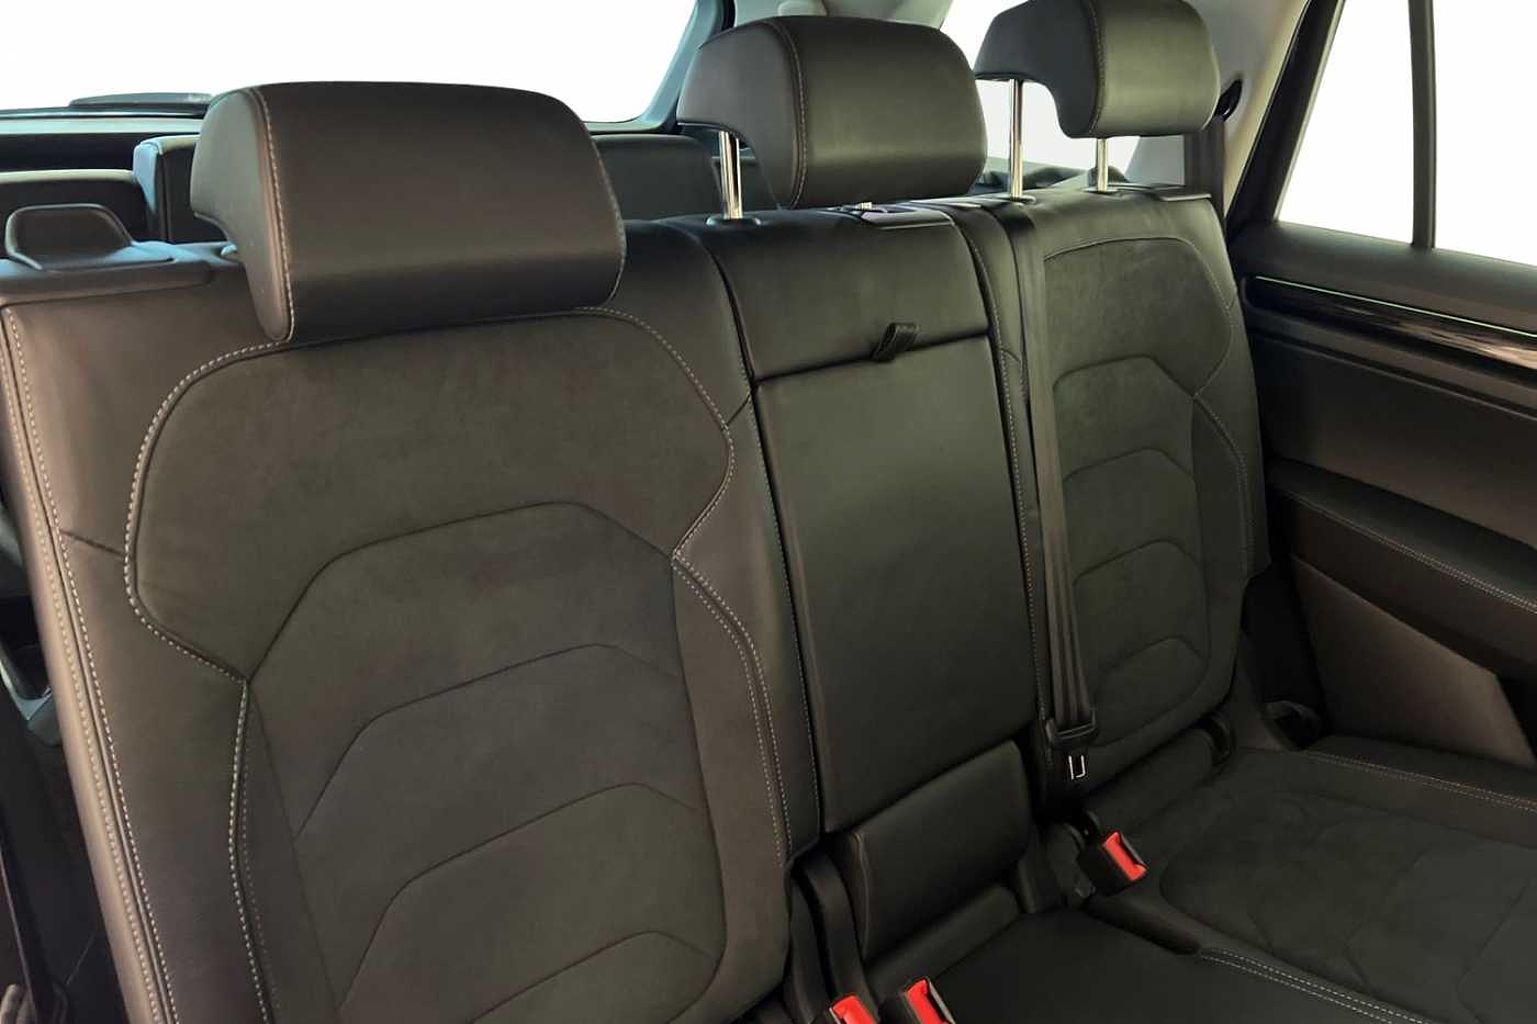 SKODA Kodiaq 2.0TDI (150ps) SE L (7 seats) SCR DSG SUV